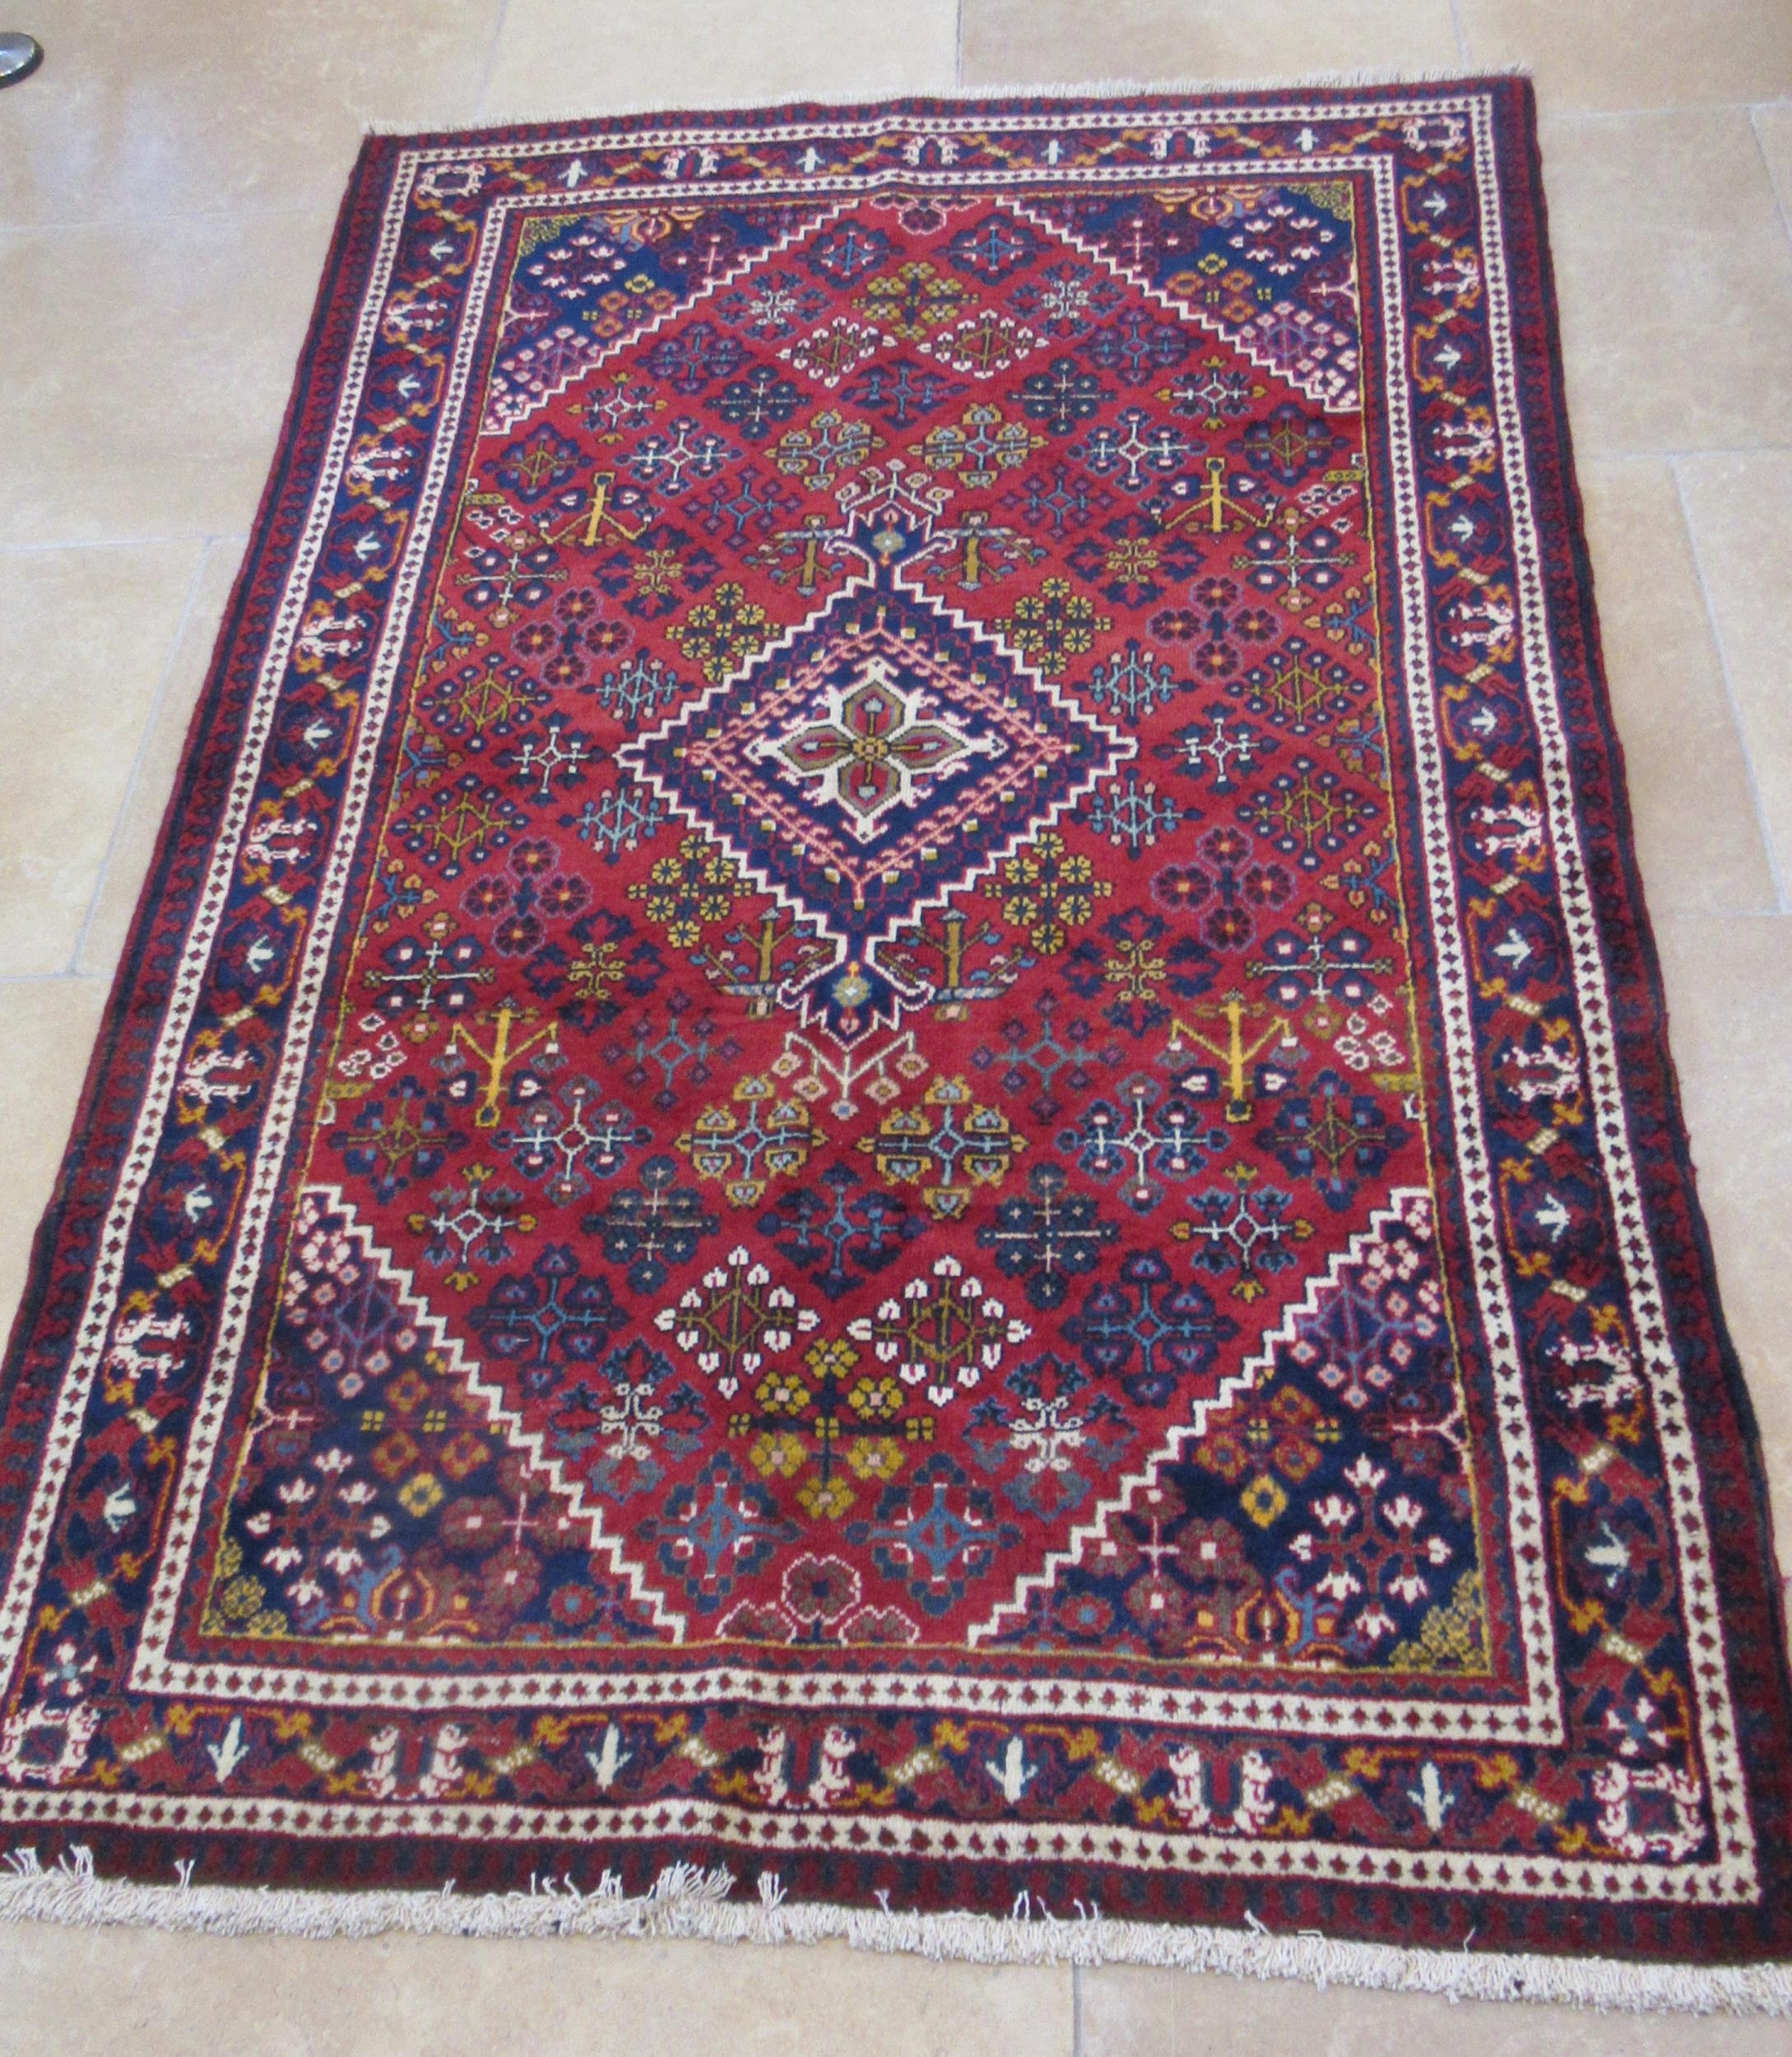 A hand knotted woollen Josha Gaan rug - 2.20m x 1.35m